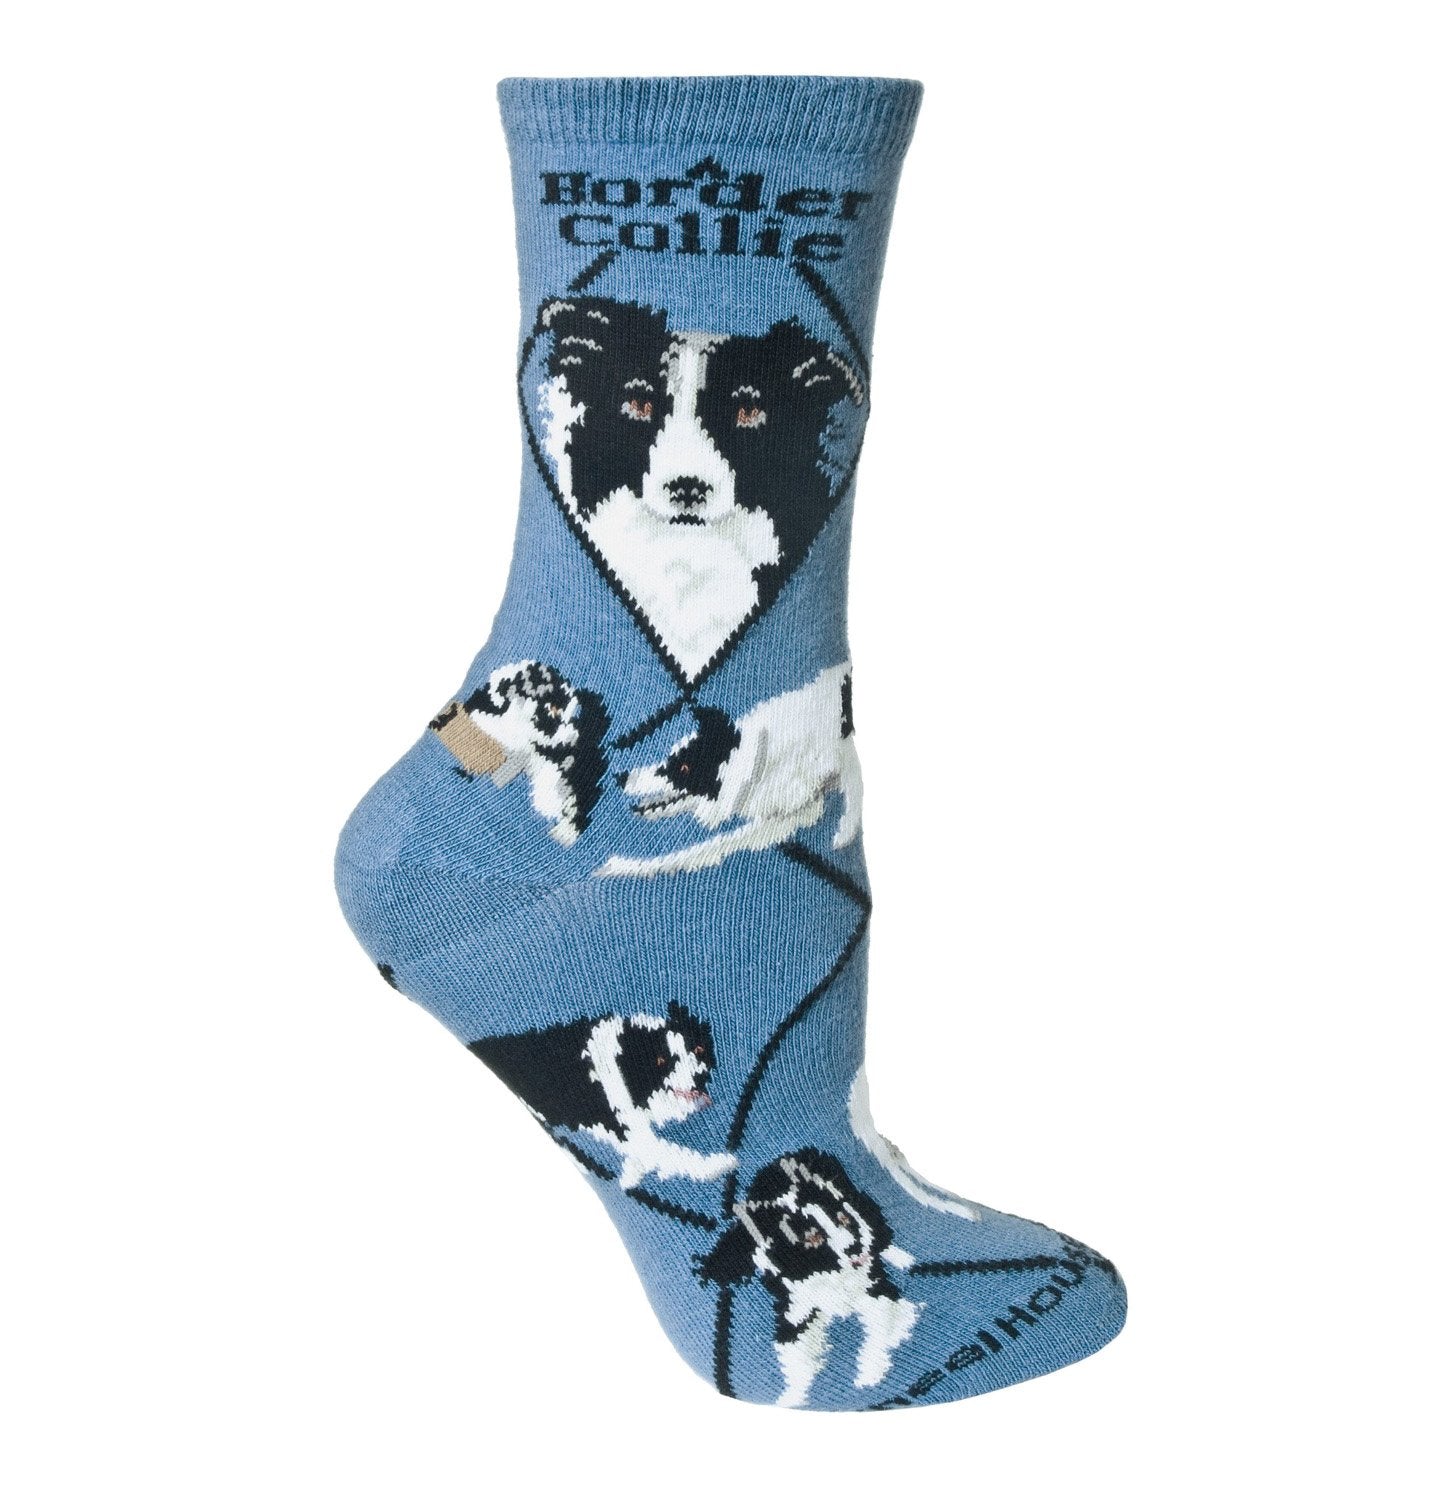 Animal Pride - Border Collie on Blue - Adult Cotton Crew Socks